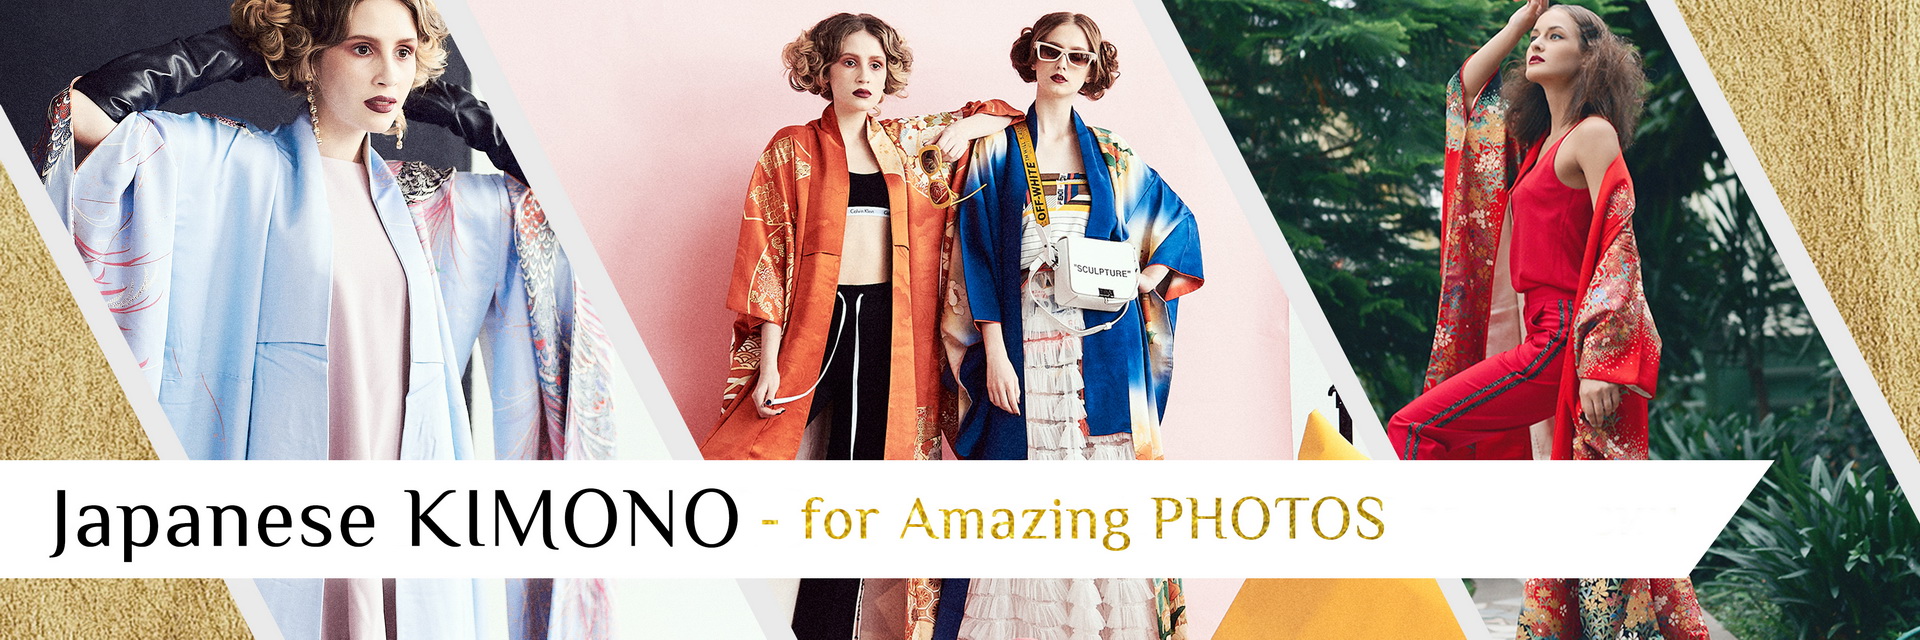 Kimono for Amazing Photos